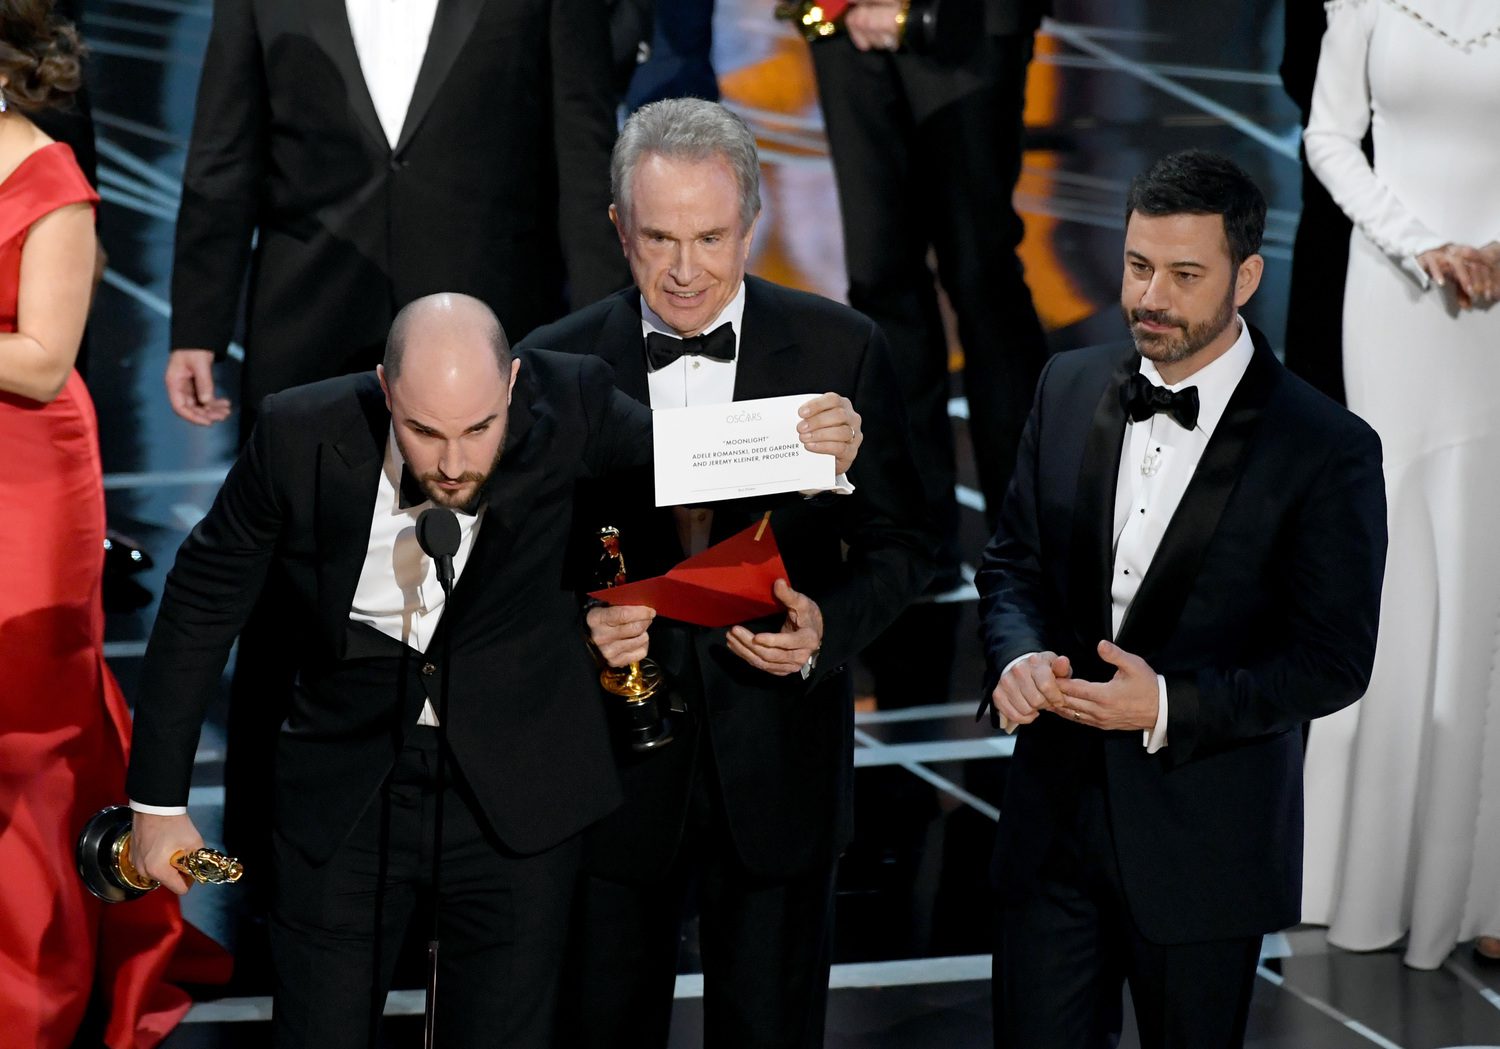 Botrány az Oscar-gálán: összekeverték a borítékokat, nem a Kaliforniai álom a legjobb film